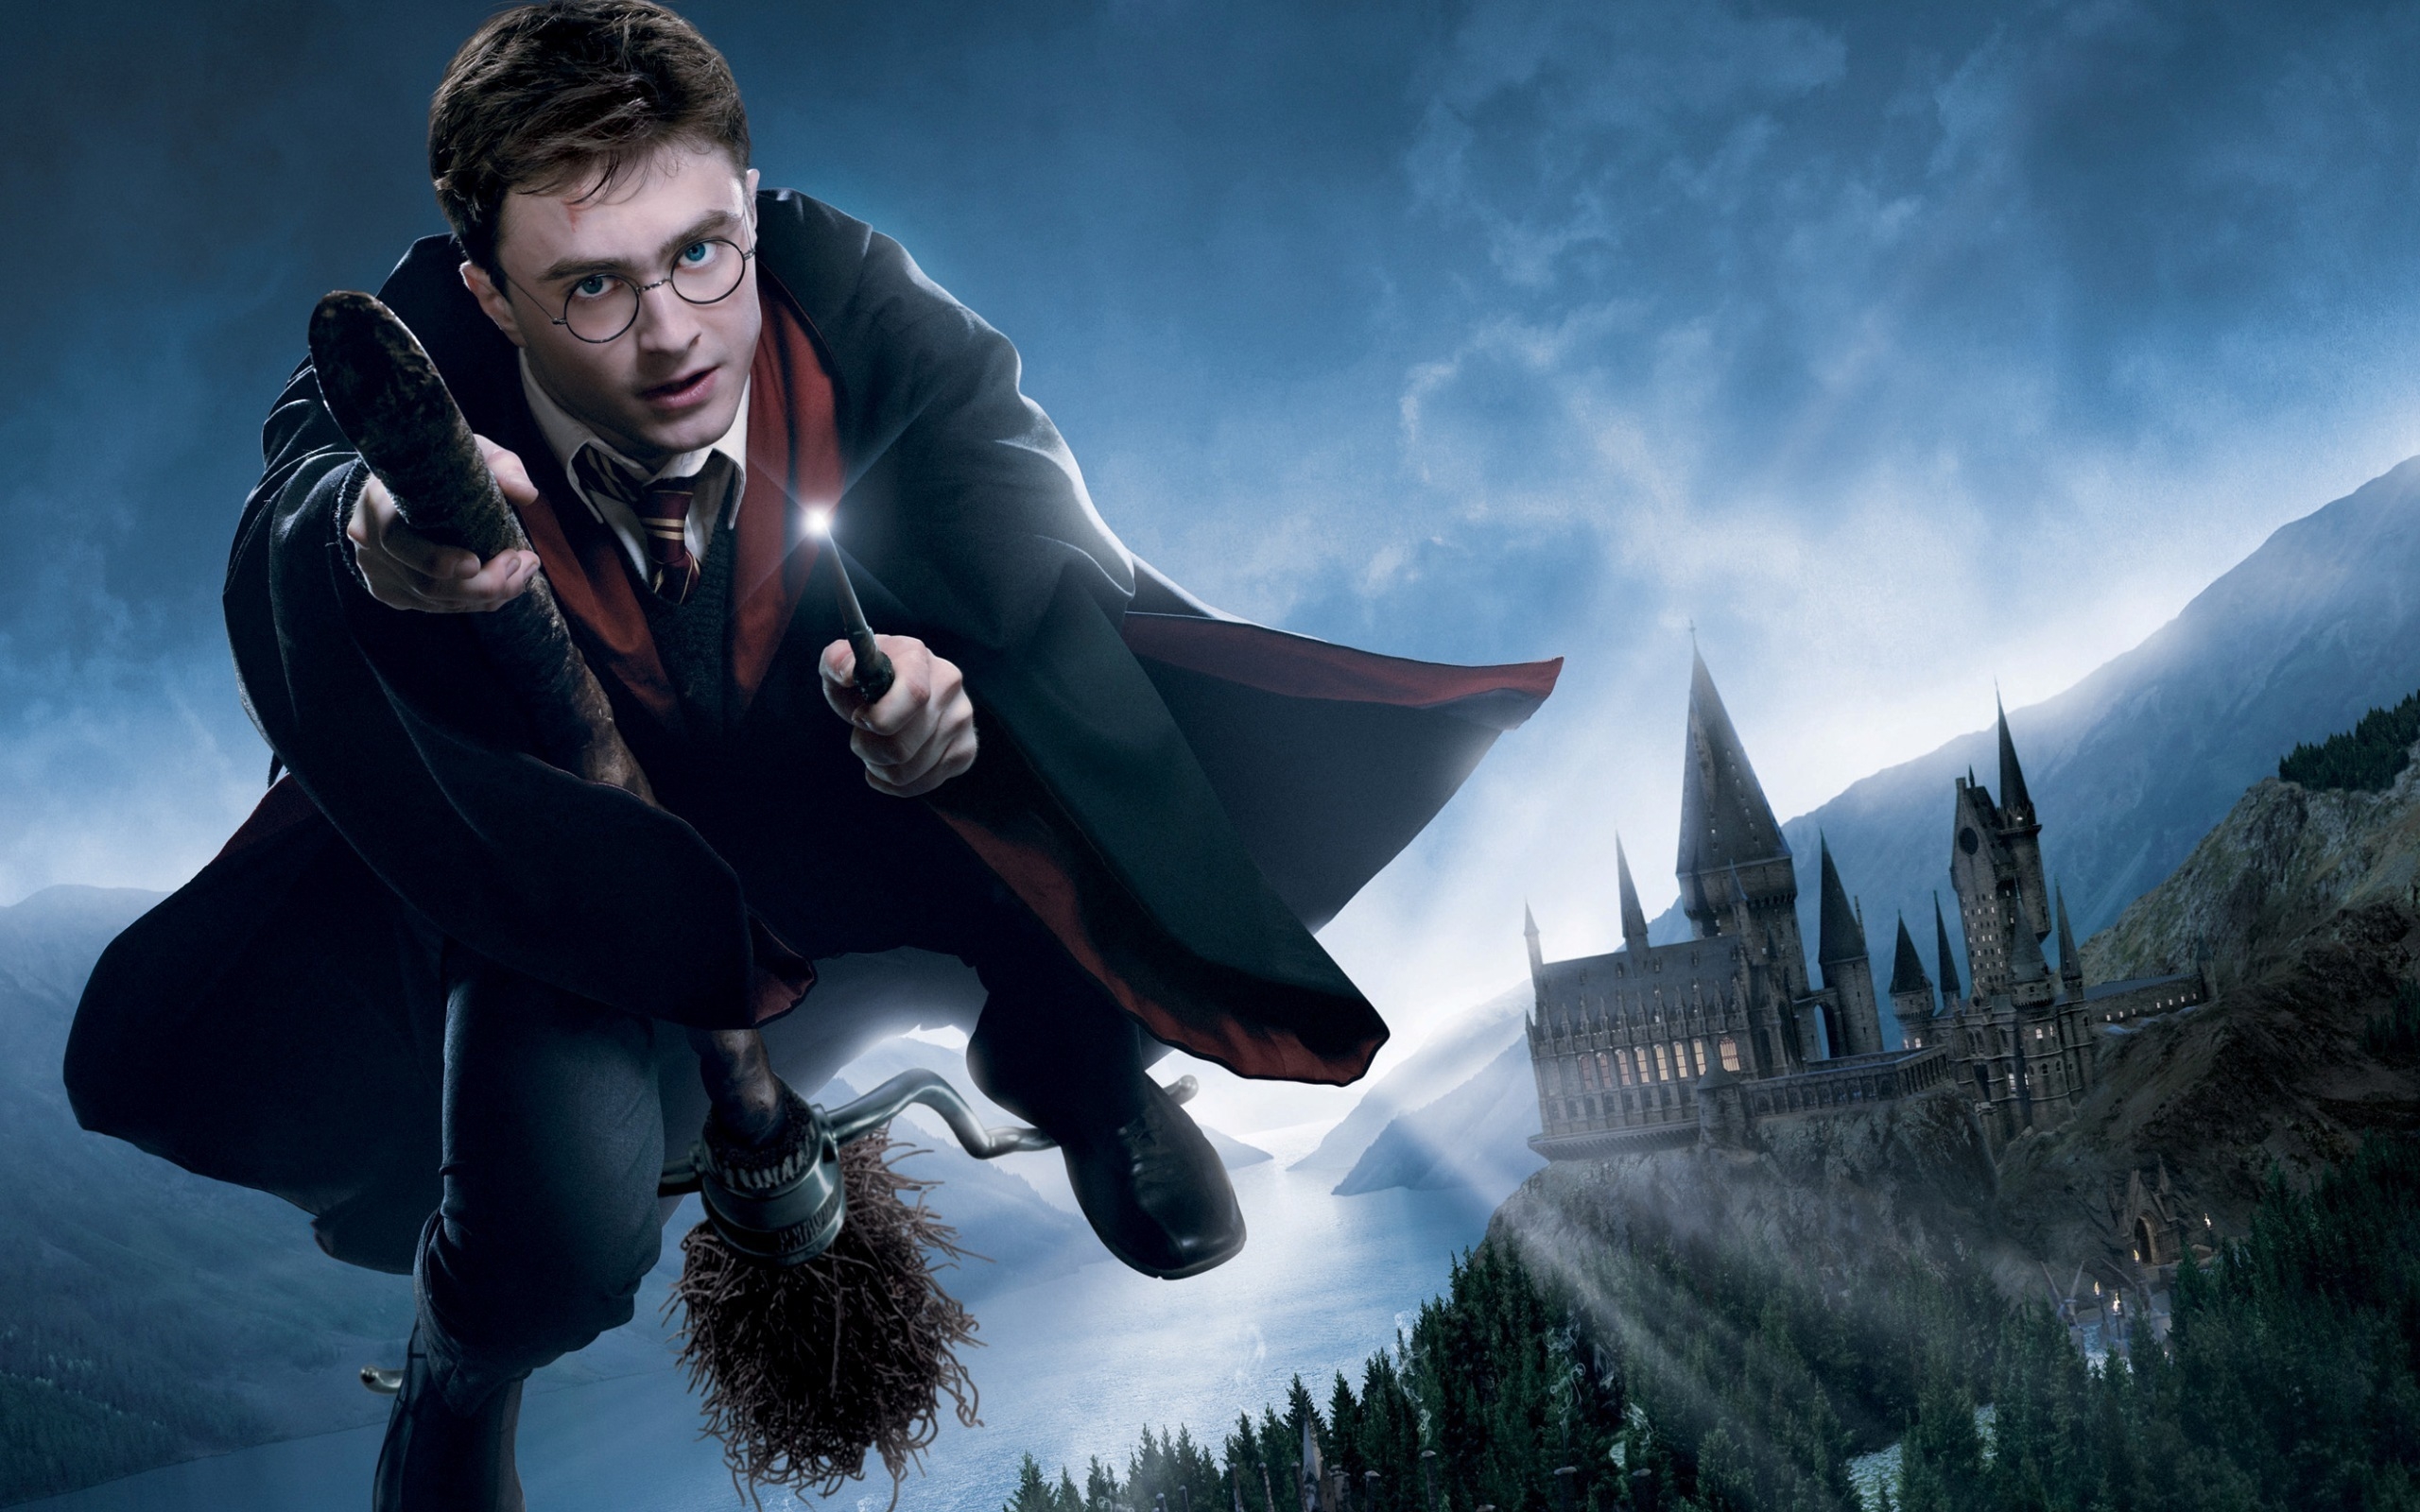 Фанаты Гарри Поттера в предвкушении: в сентябре будут опубликованы три новые книги Джоан Роулинг о мире волшебников